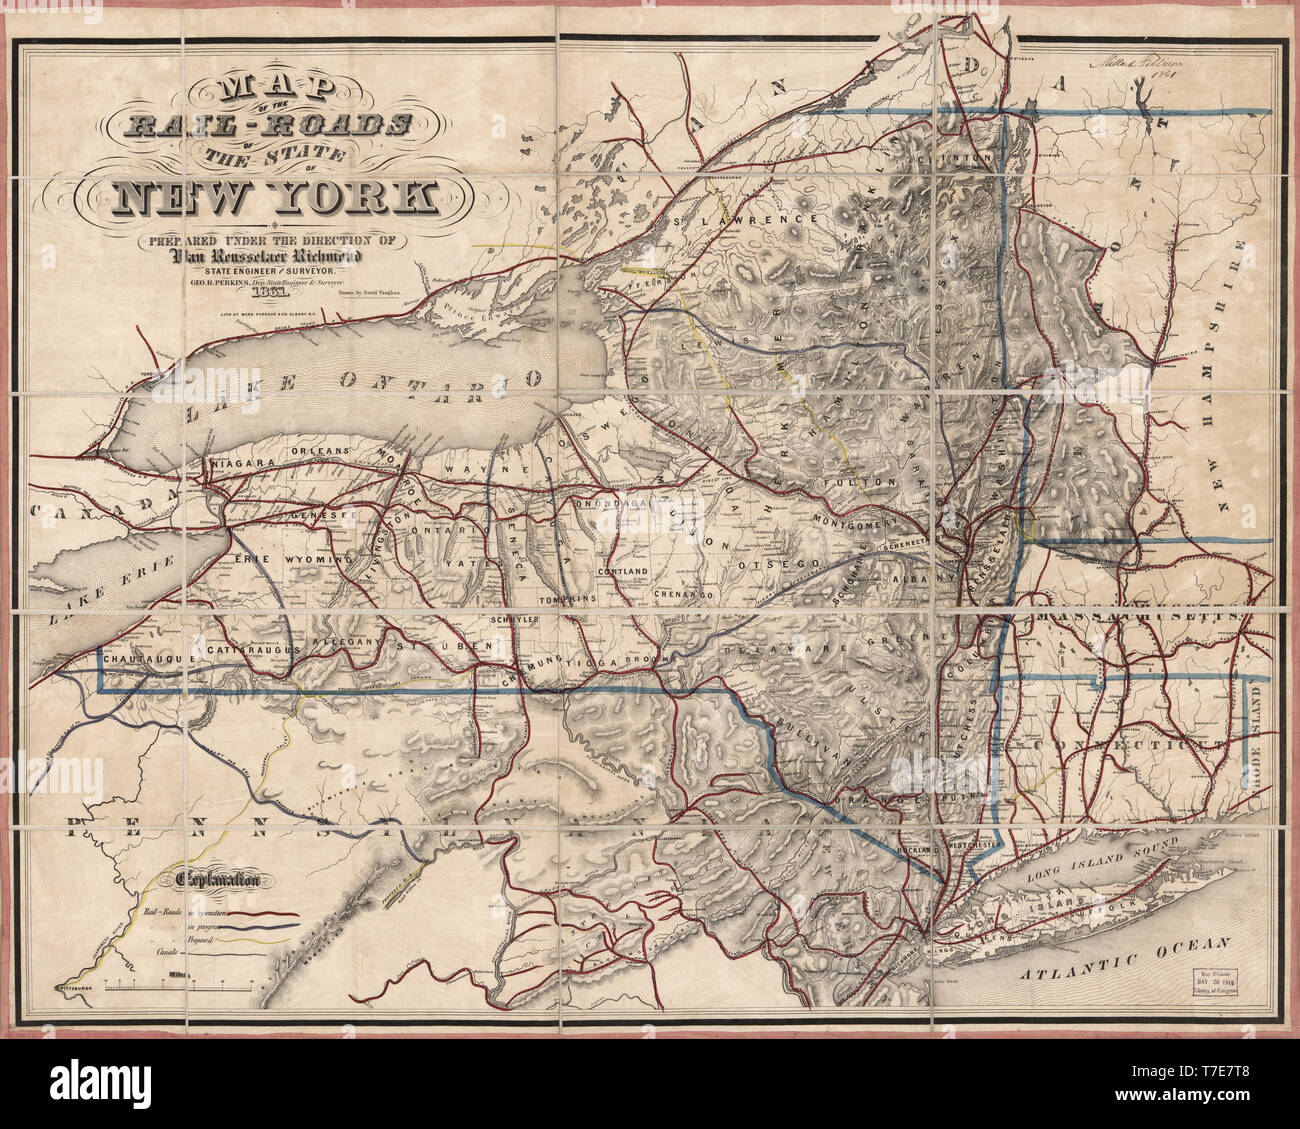 Mappa del Rail-Roads dello Stato di New York, preparata sotto la direzione di Van Rensselaer Richmond, stato ingegnere e geometra, disegnato da David Vaughan, litografia da erbacce, Parsons & Co., Albany, N.Y., 1861 Foto Stock